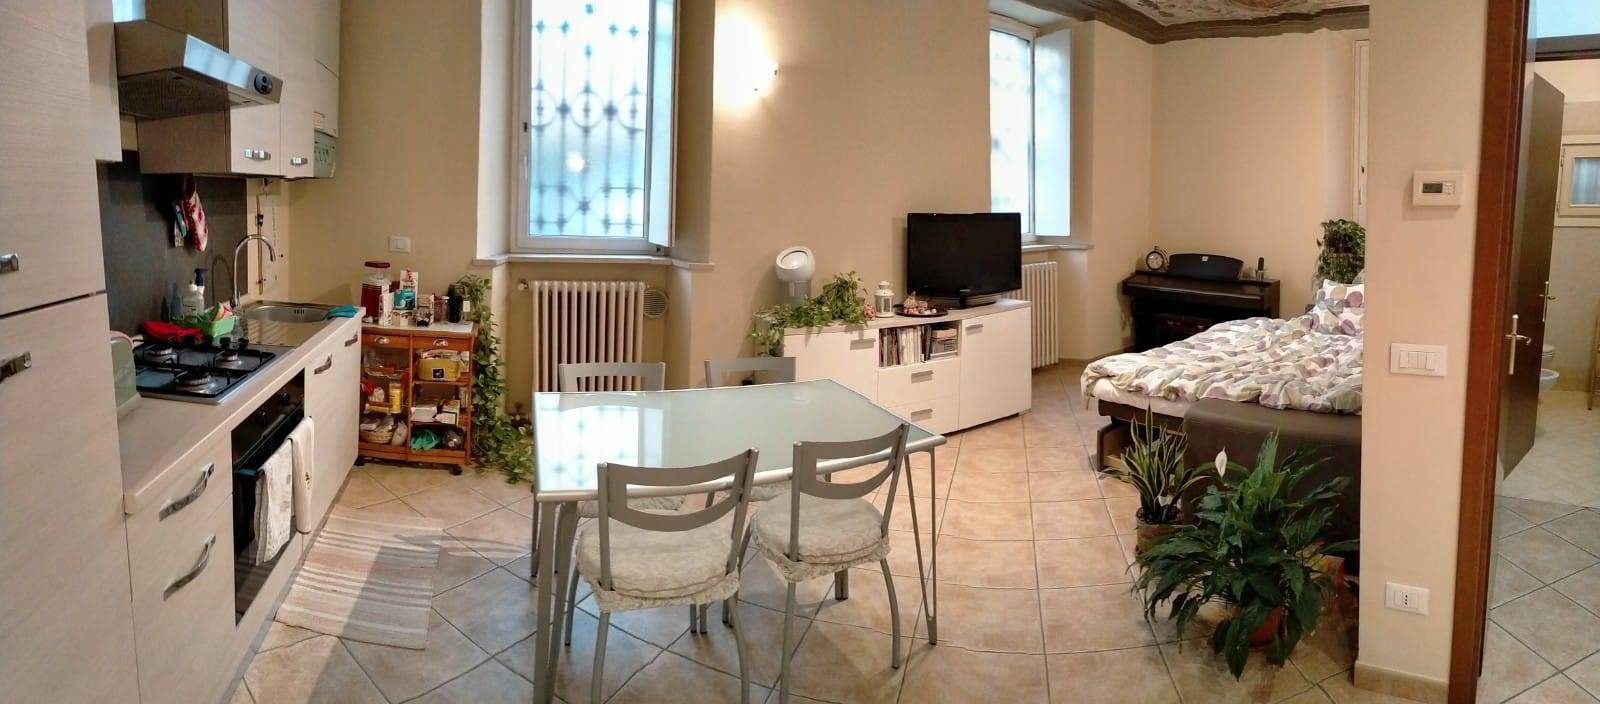 Appartamento in affitto a Brescia, 1 locali, zona Zona: Porta Trento/Via Veneto, prezzo € 635 | CambioCasa.it